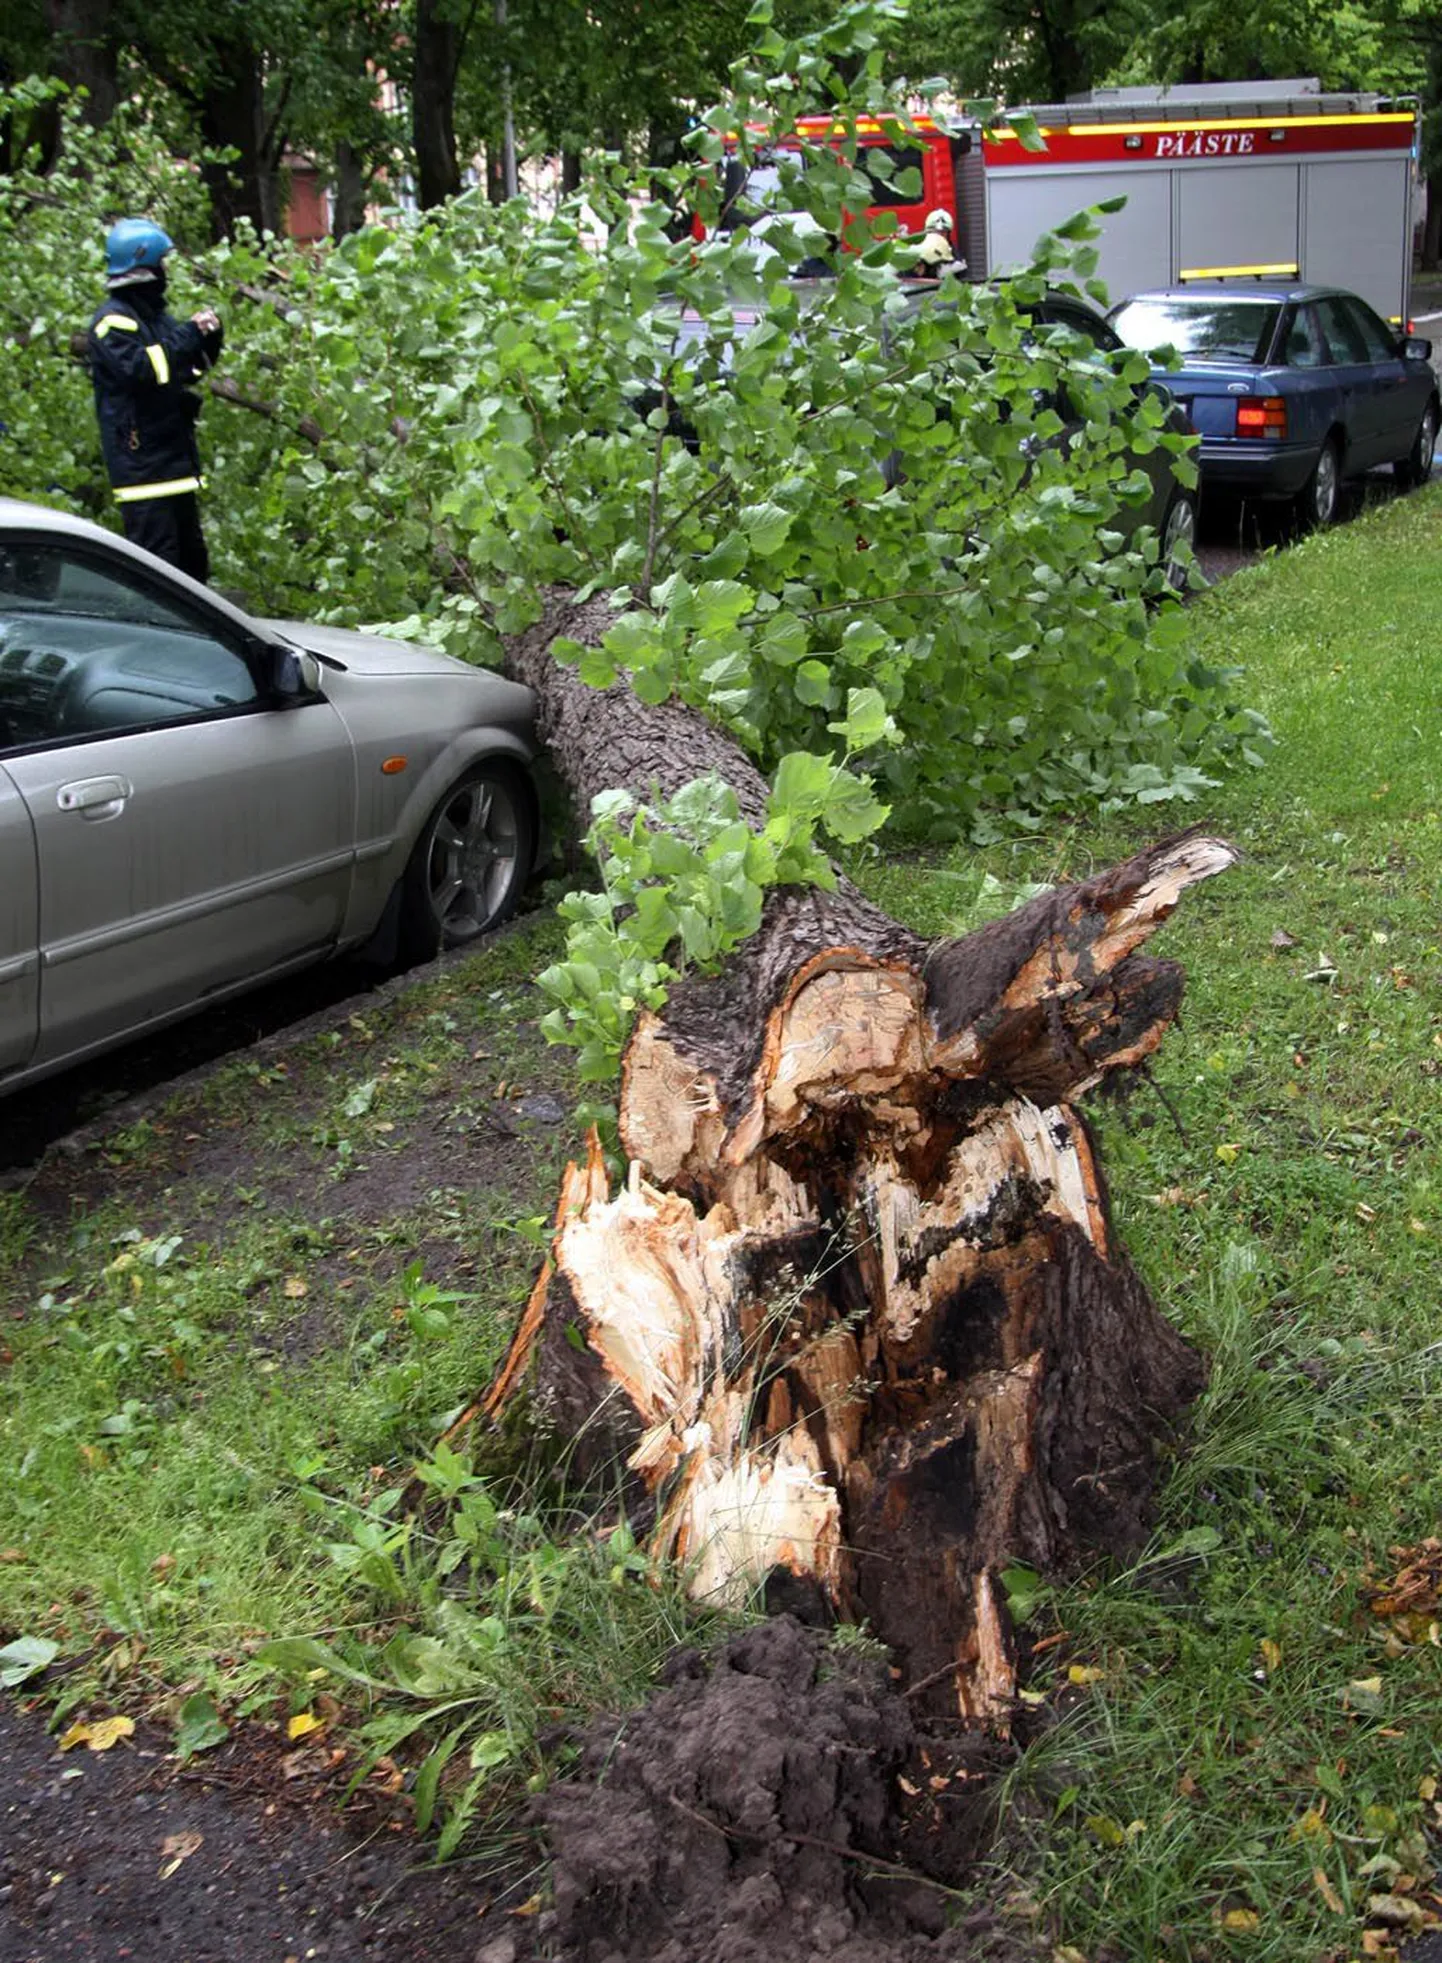 Eile murdis tuul Pühavaimu tänaval kaitsealusel alleel puu, mis kukkus õnnetult autole peale.